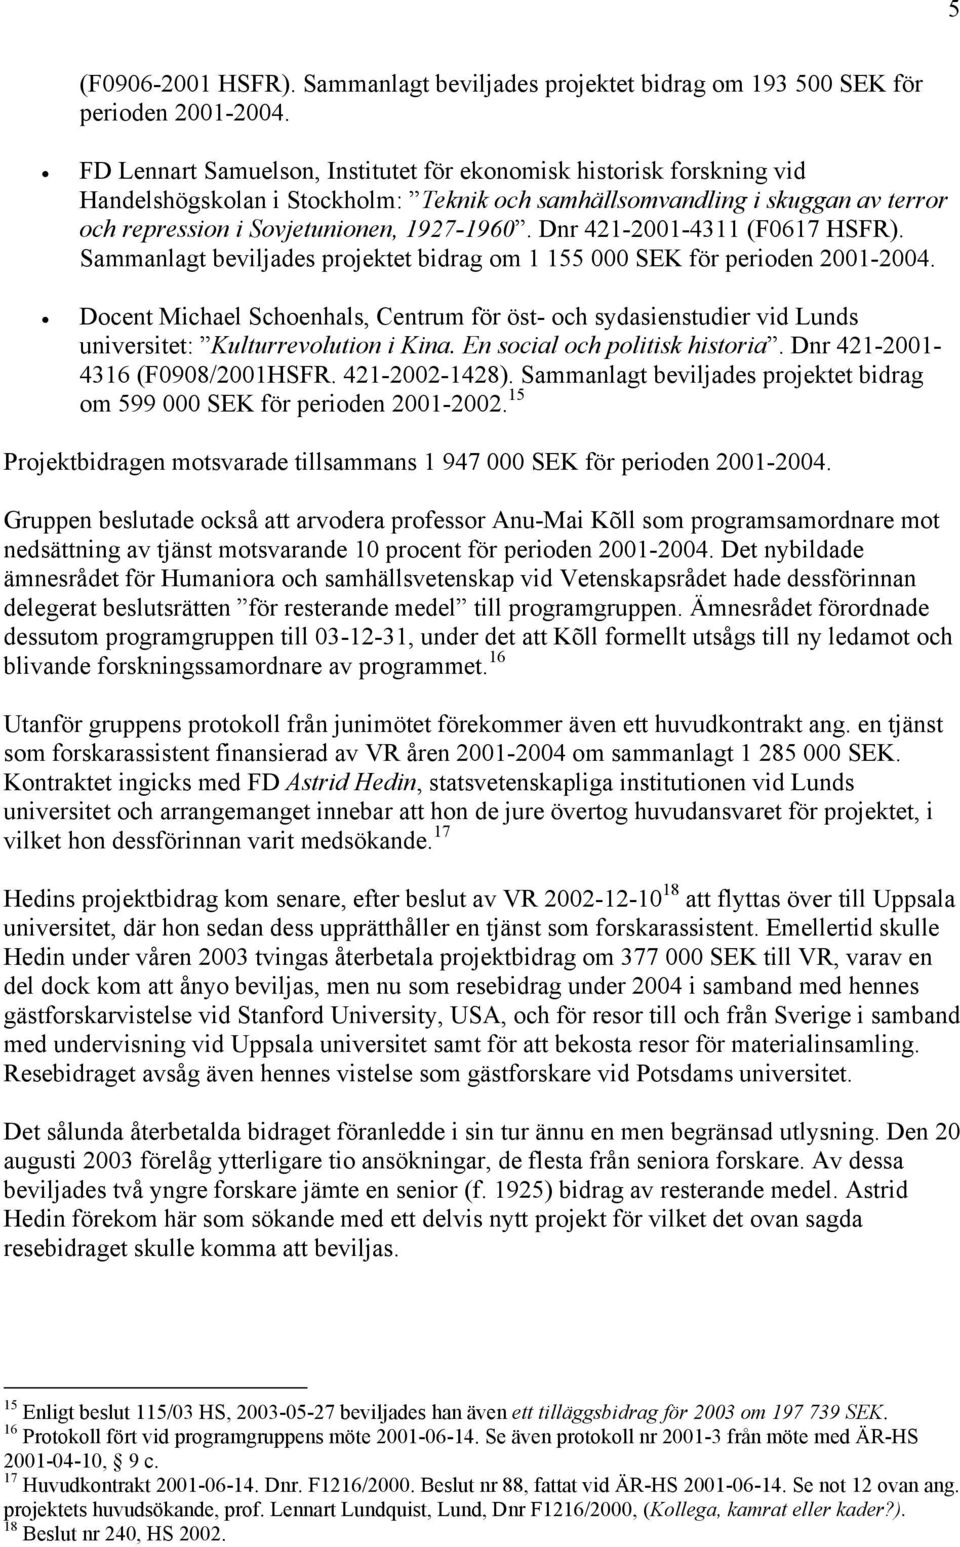 Dnr 421-2001-4311 (F0617 HSFR). Sammanlagt beviljades projektet bidrag om 1 155 000 SEK för perioden 2001-2004.